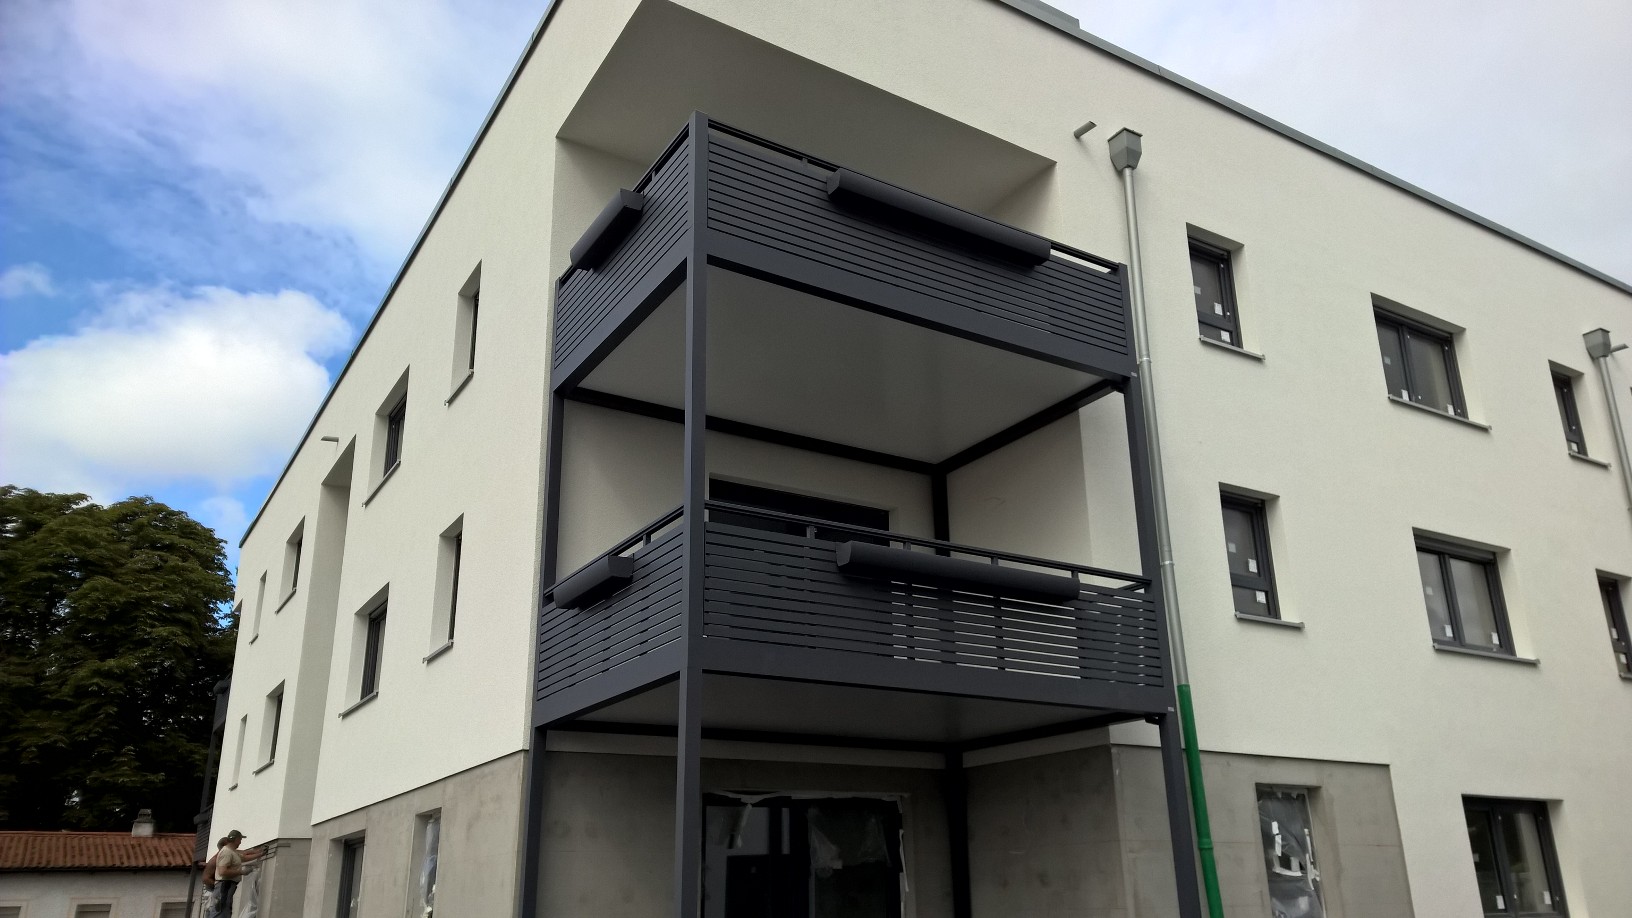 BONDA Balkonerweiterung Umgestaltung Ecken und Nischen